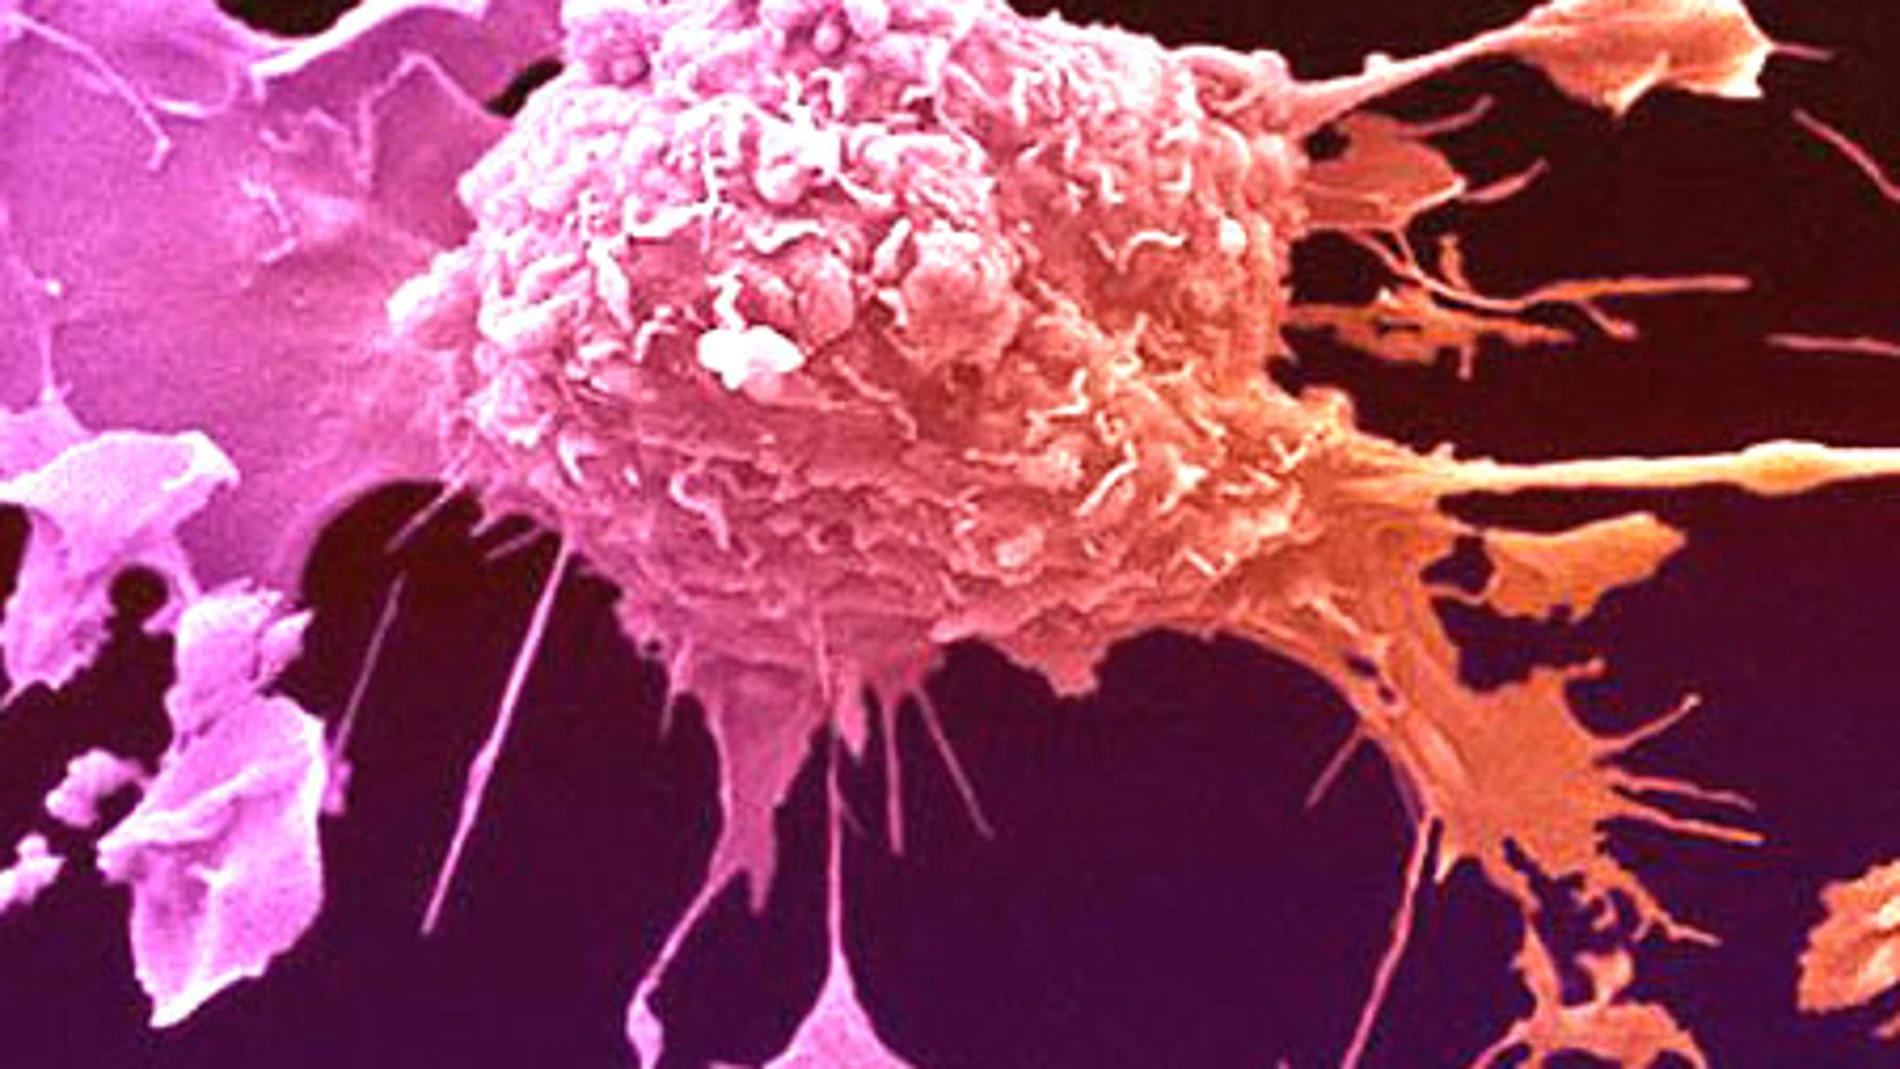 El virus que ataca al cáncer sin dañar las células sanas